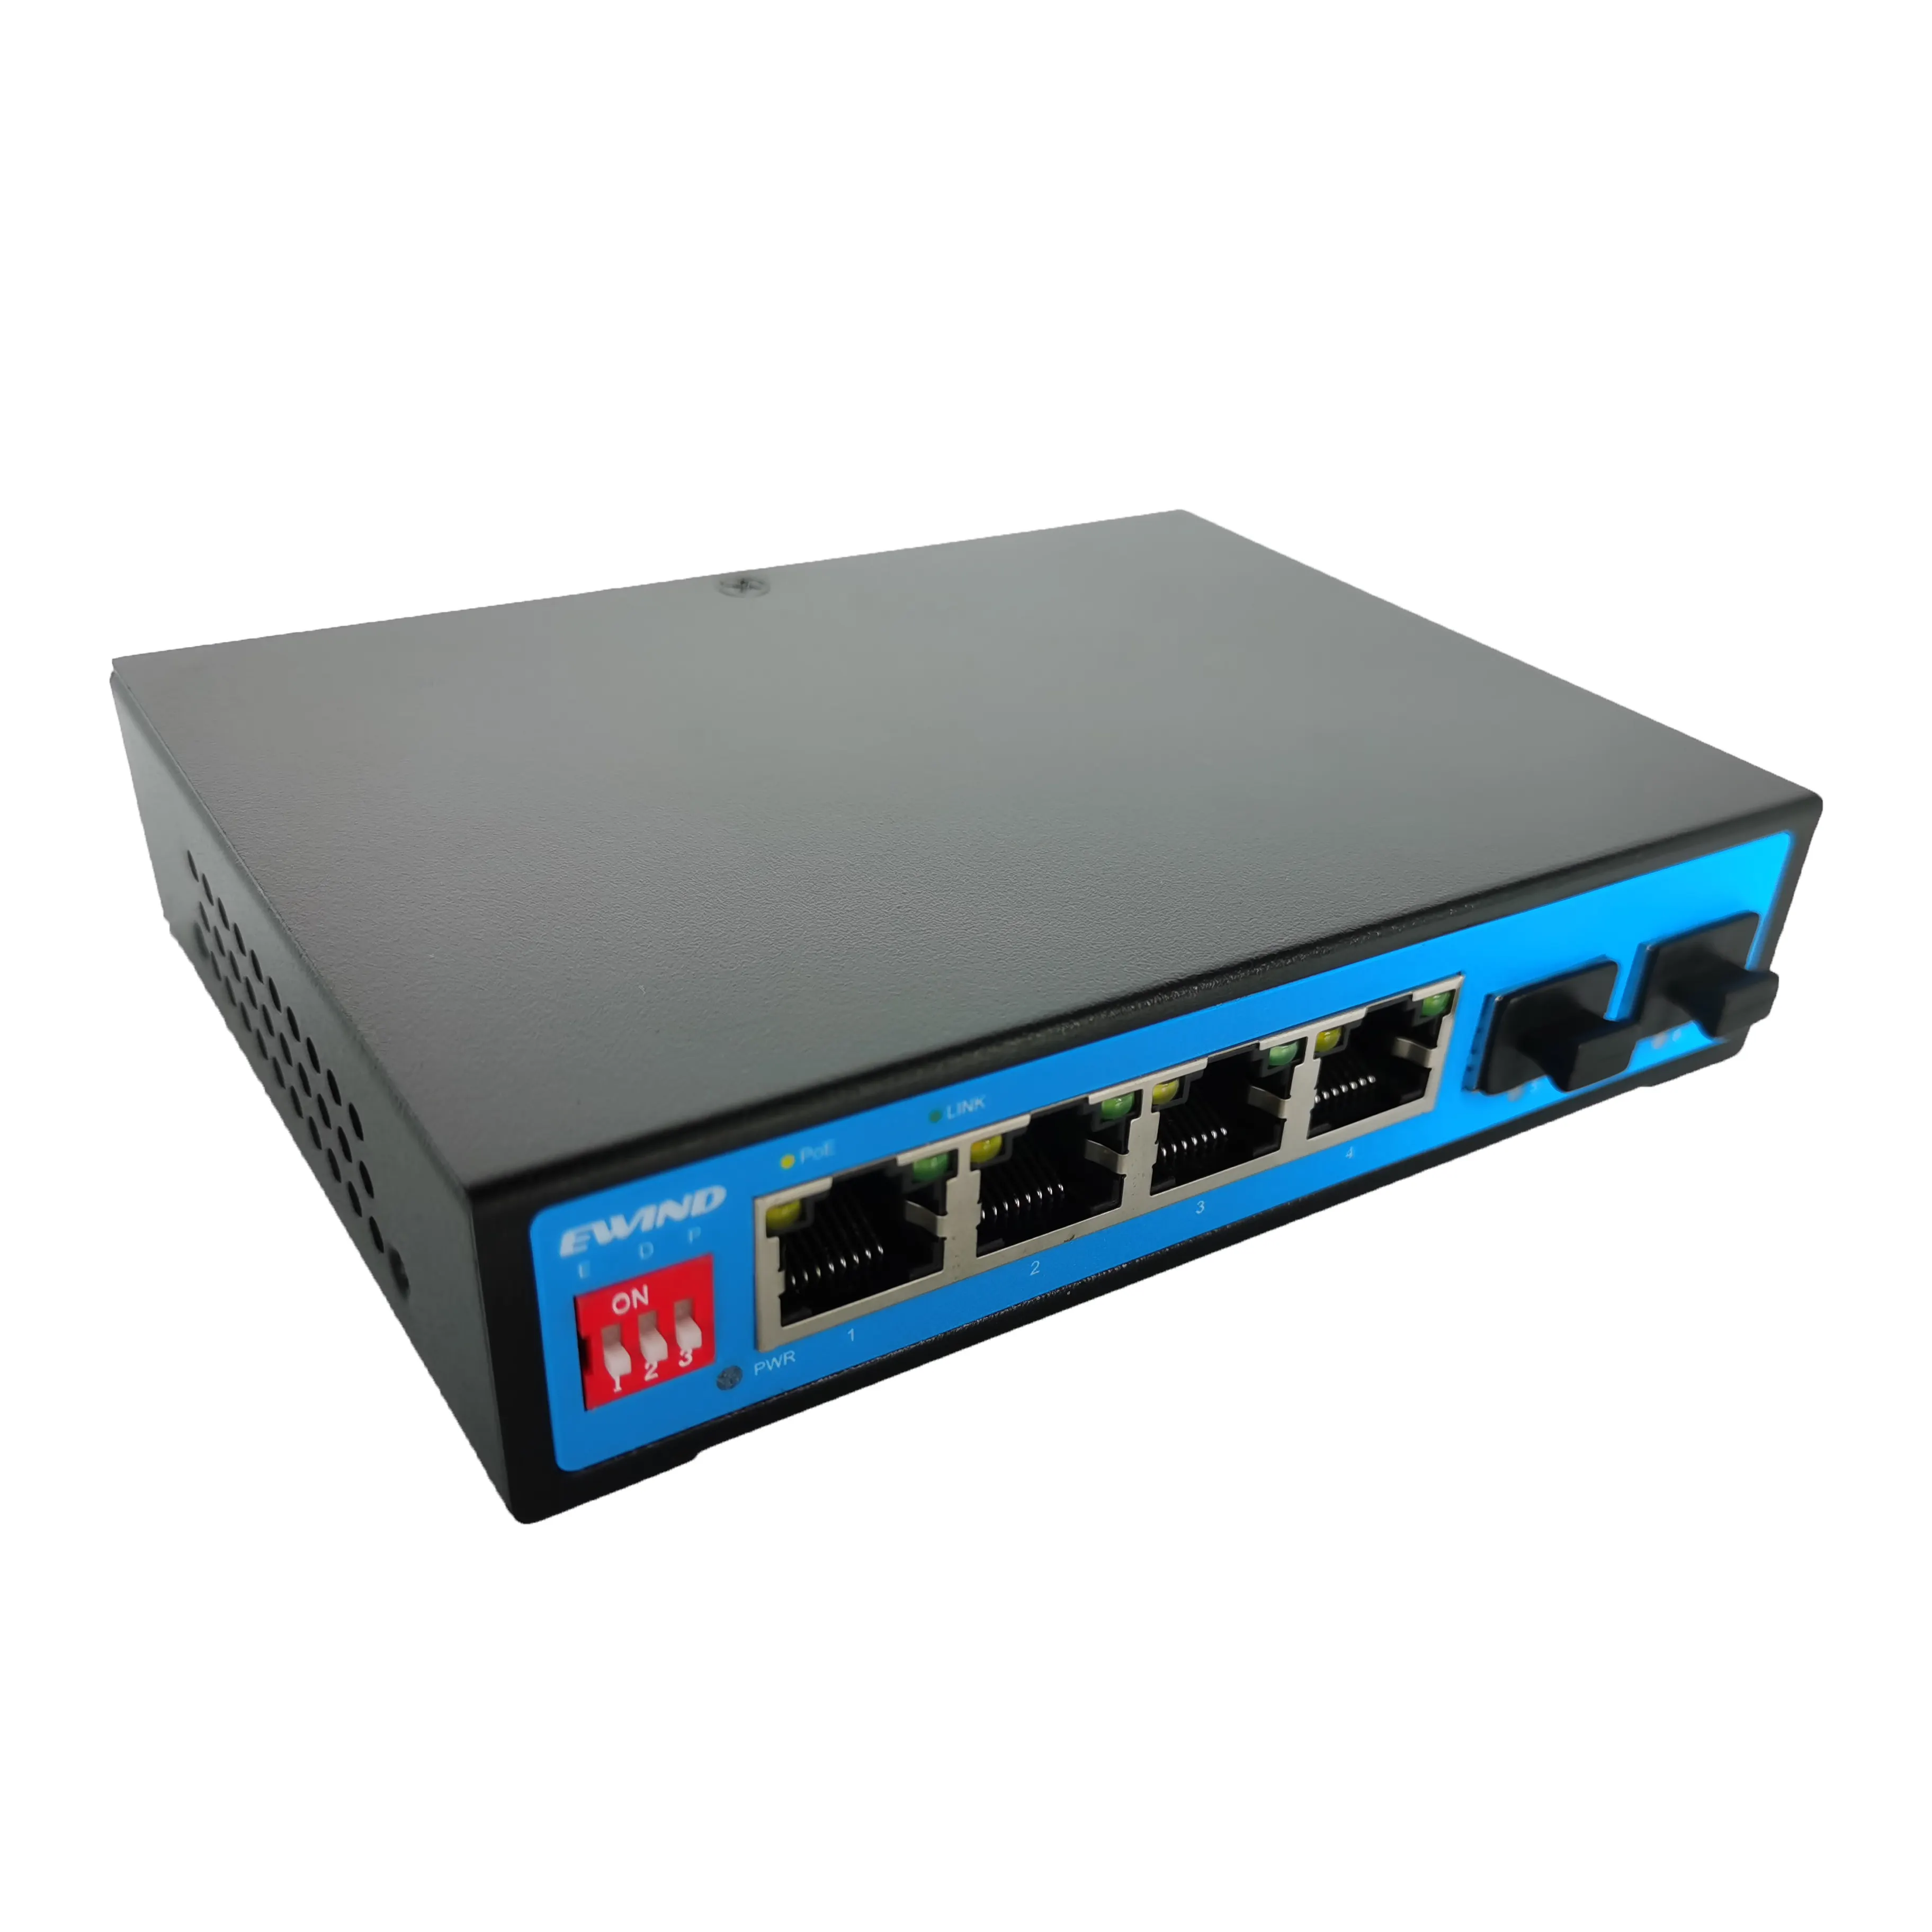 CCTV Accessories 4port POE Switch Ethernet Gigabit Fiber Converter 12V for IP Camera